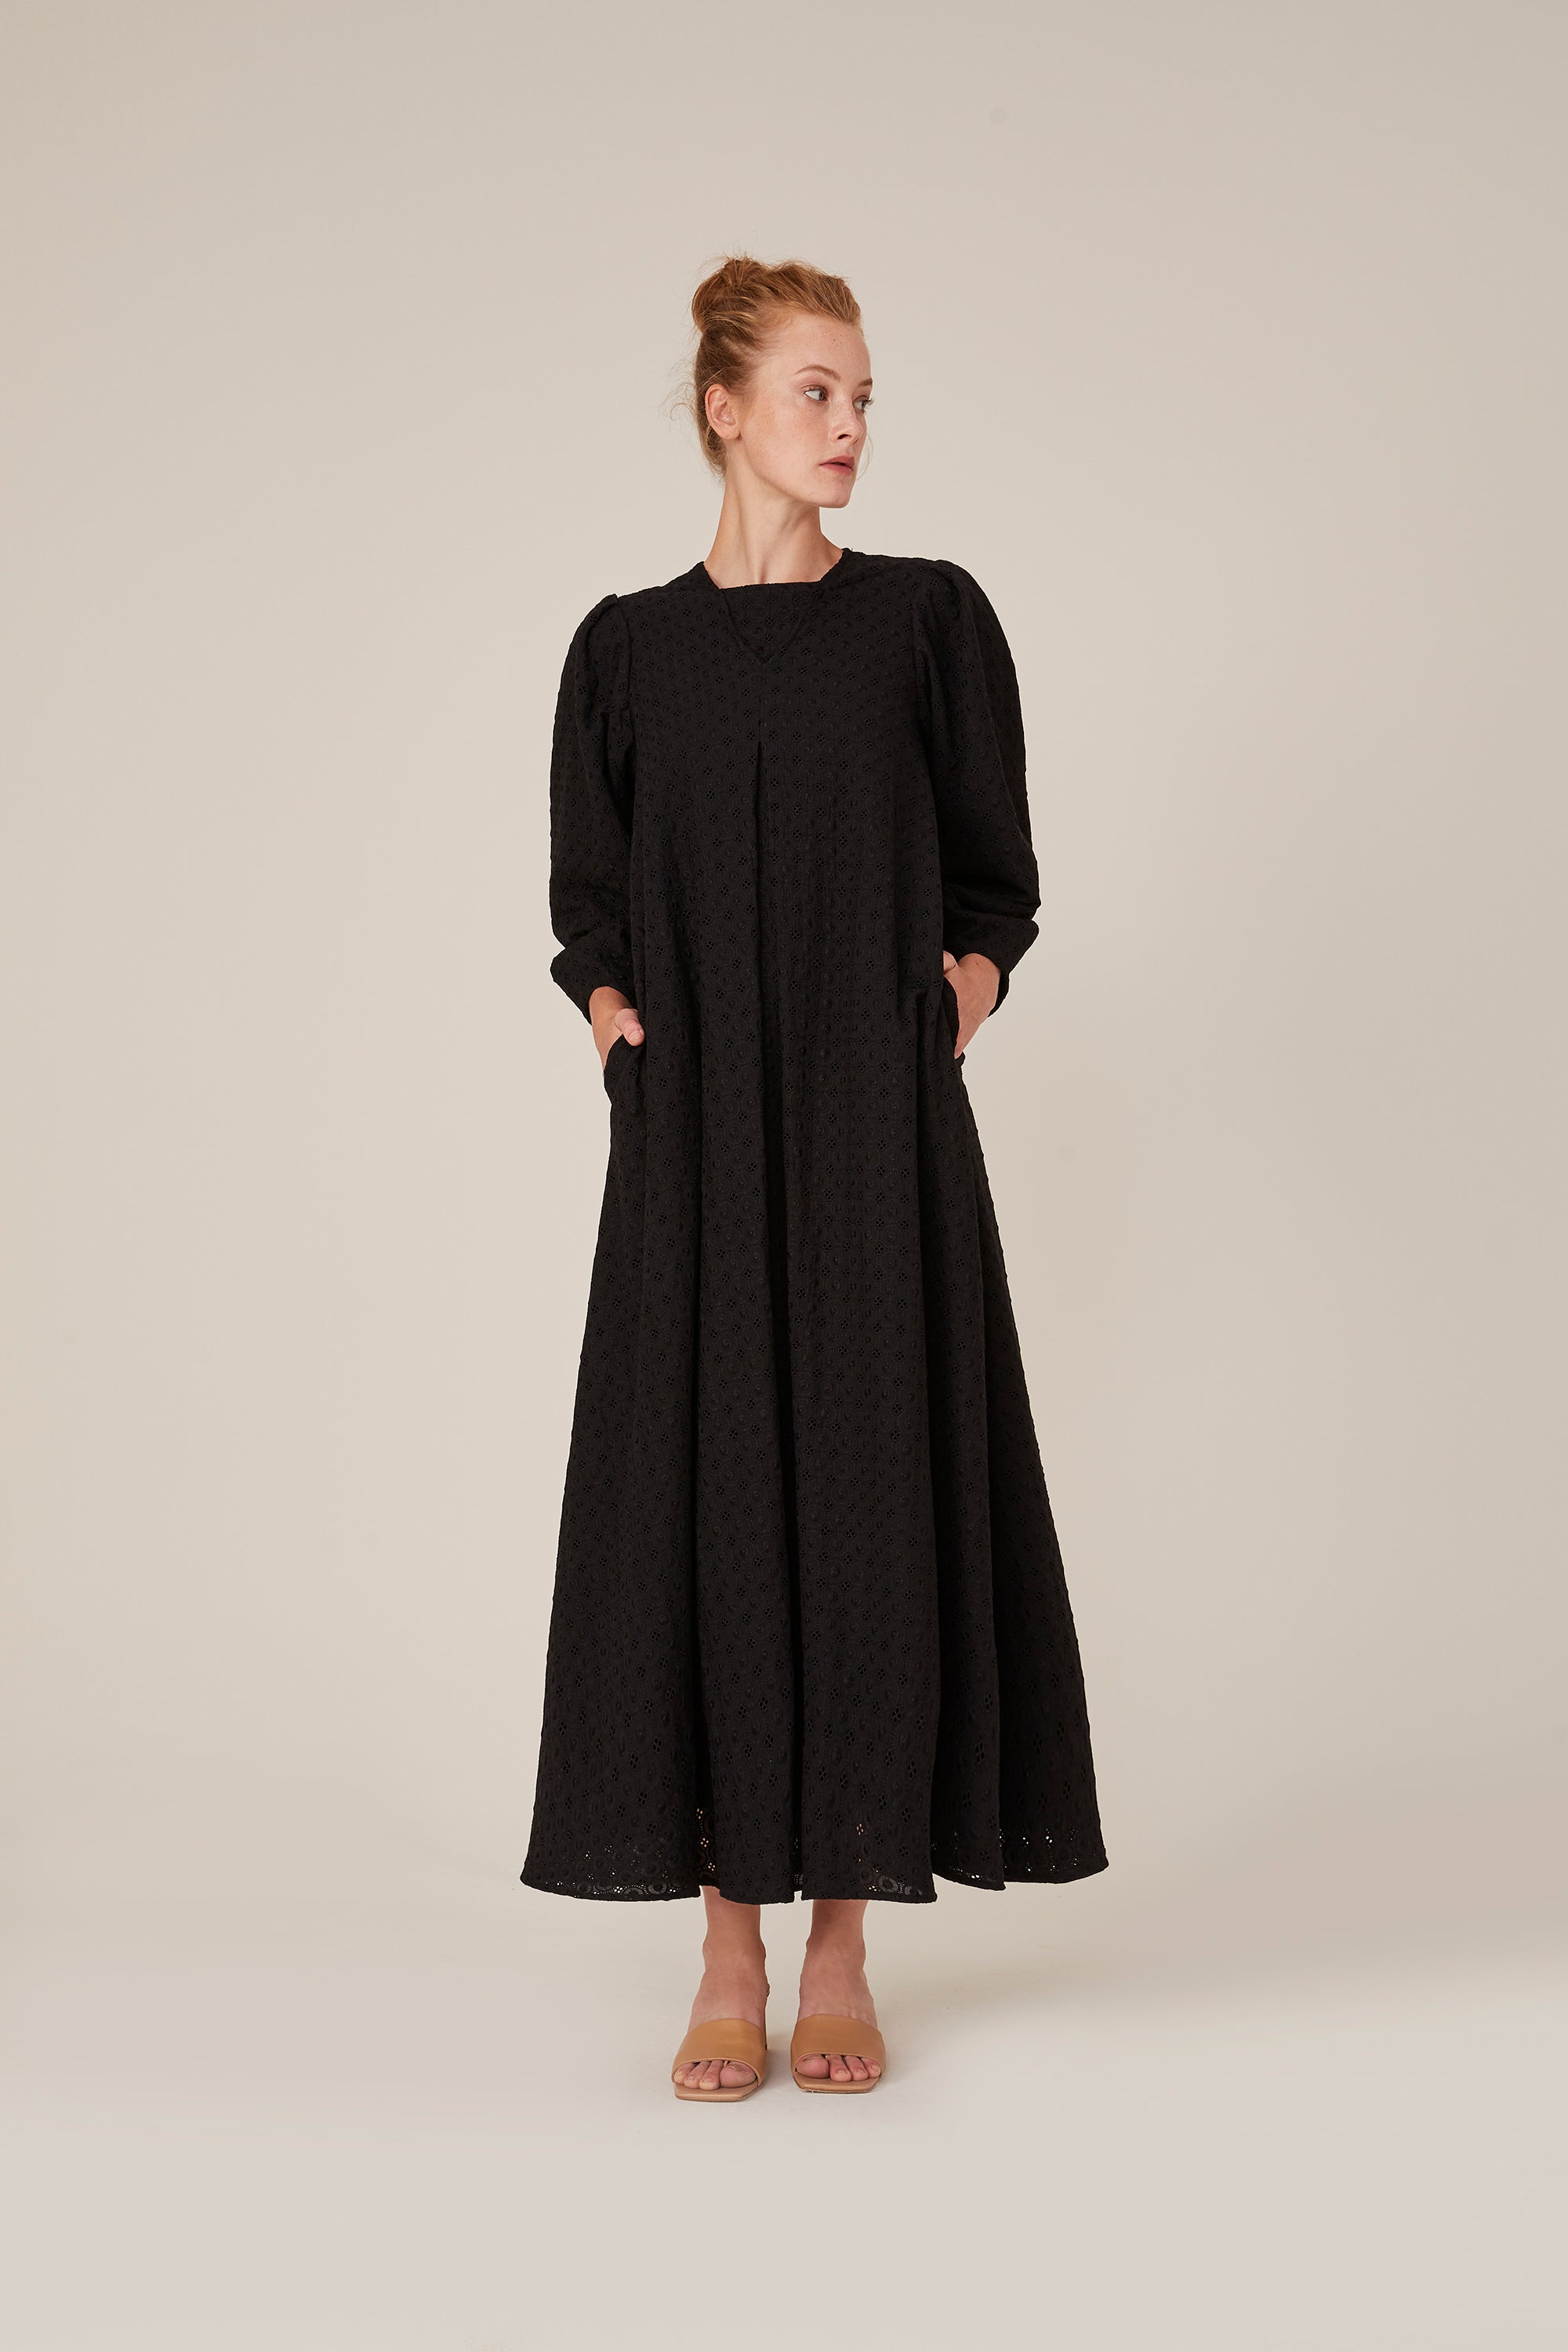 Dress Montreux-Black 100% organic cotton 🌿 